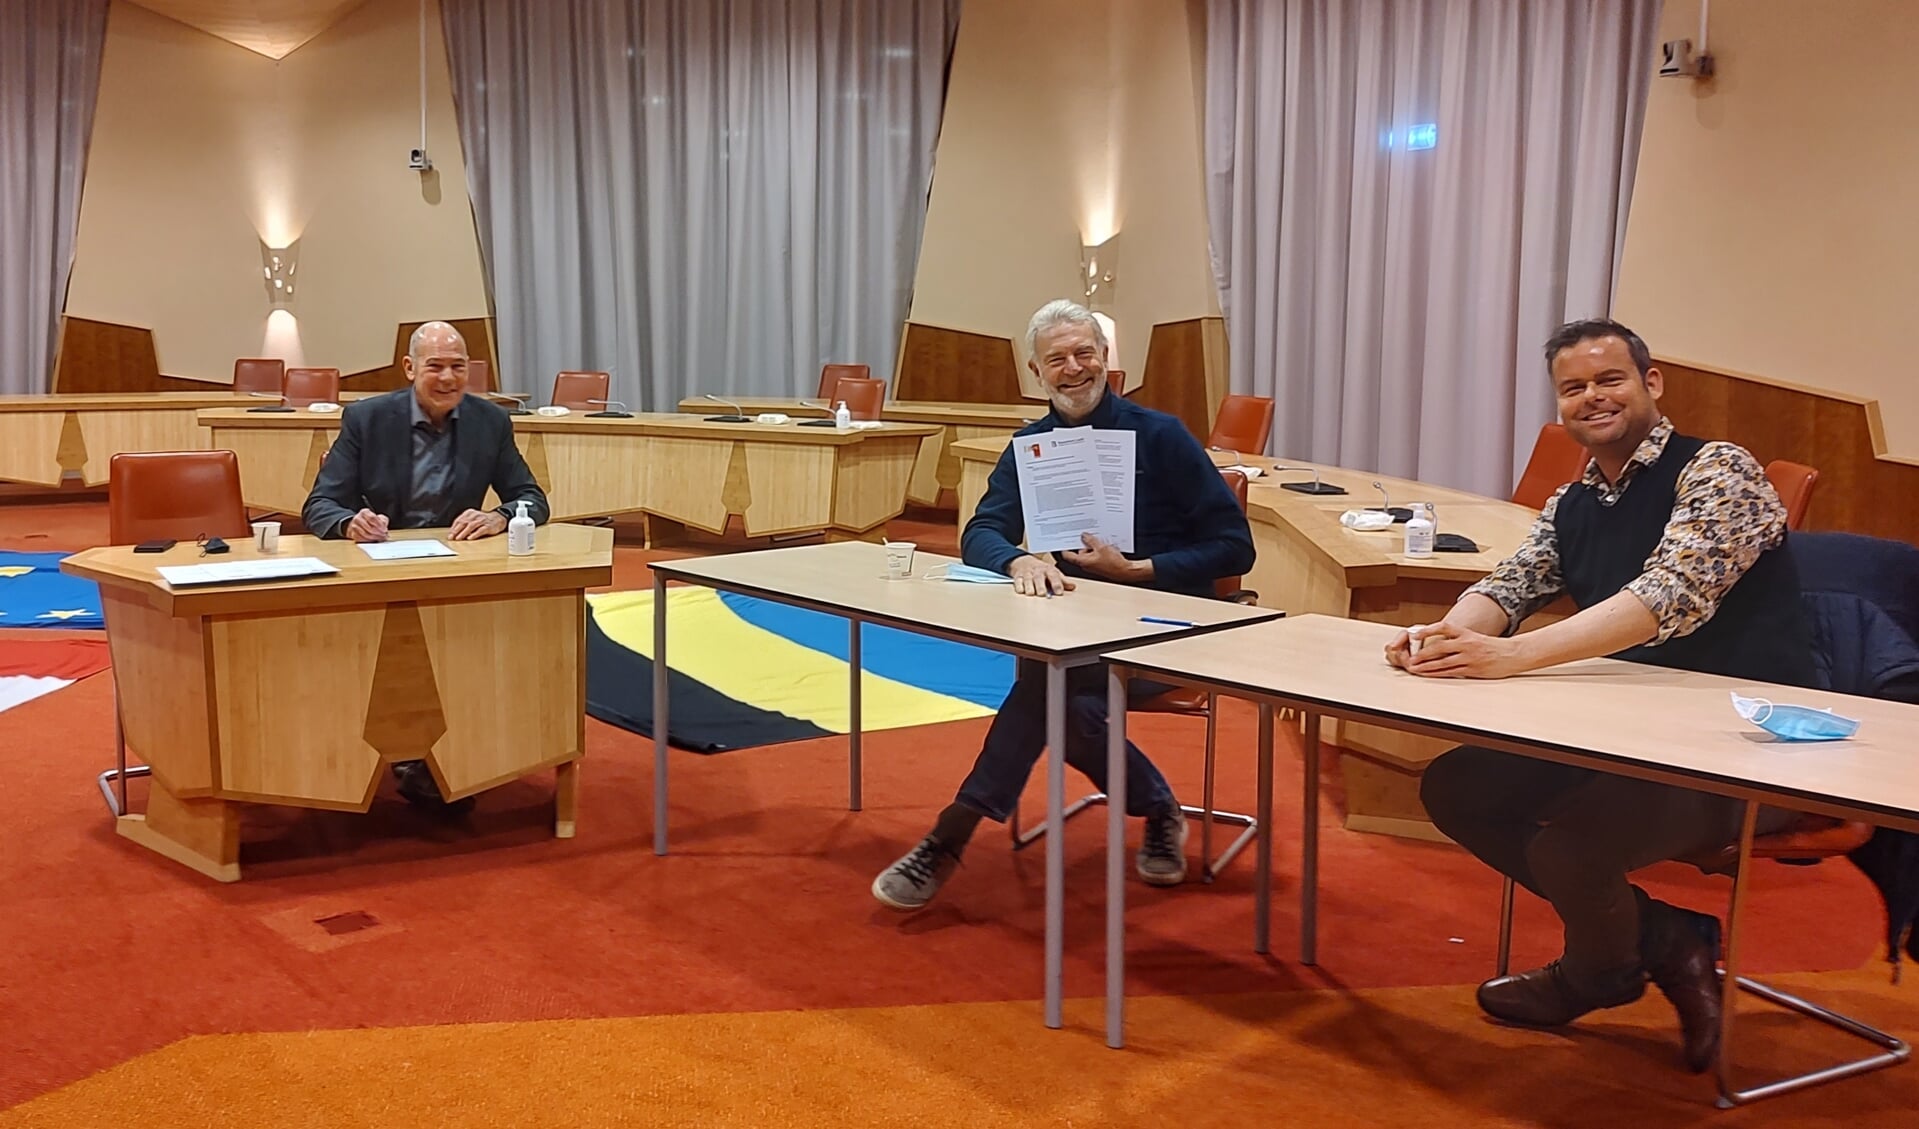 De convenanten werden op donderdag 2 december in het gemeentehuis in Maurik ondertekend.